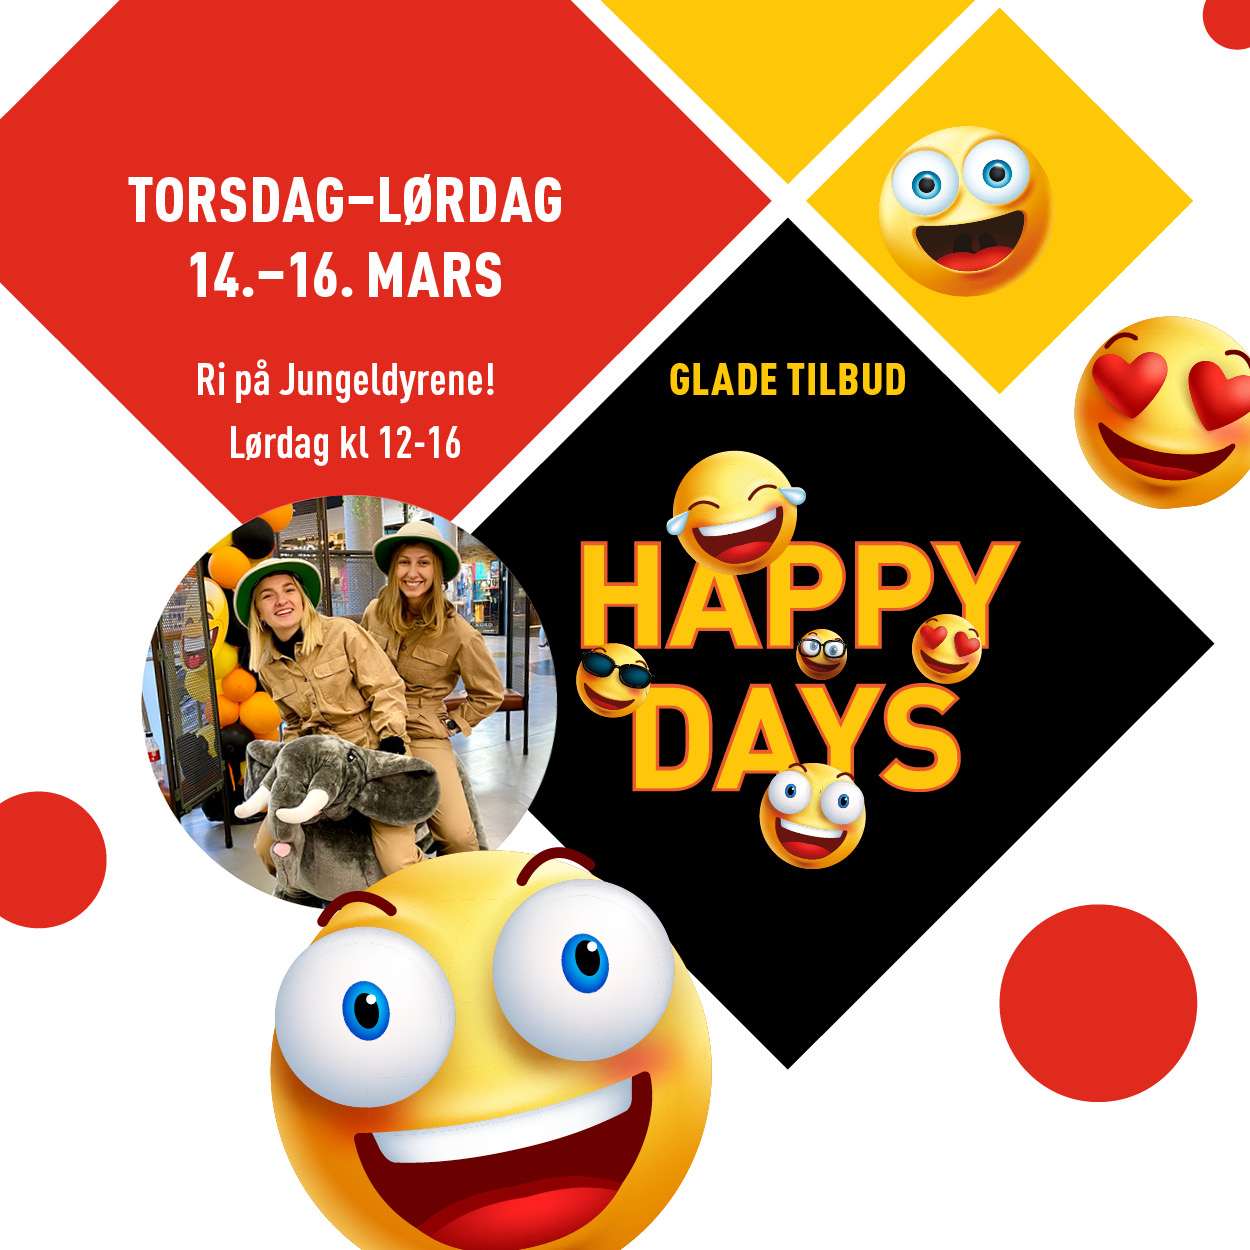 Happy Days 14.-16. mars med glade tilbud og besøk av Jungeldyr